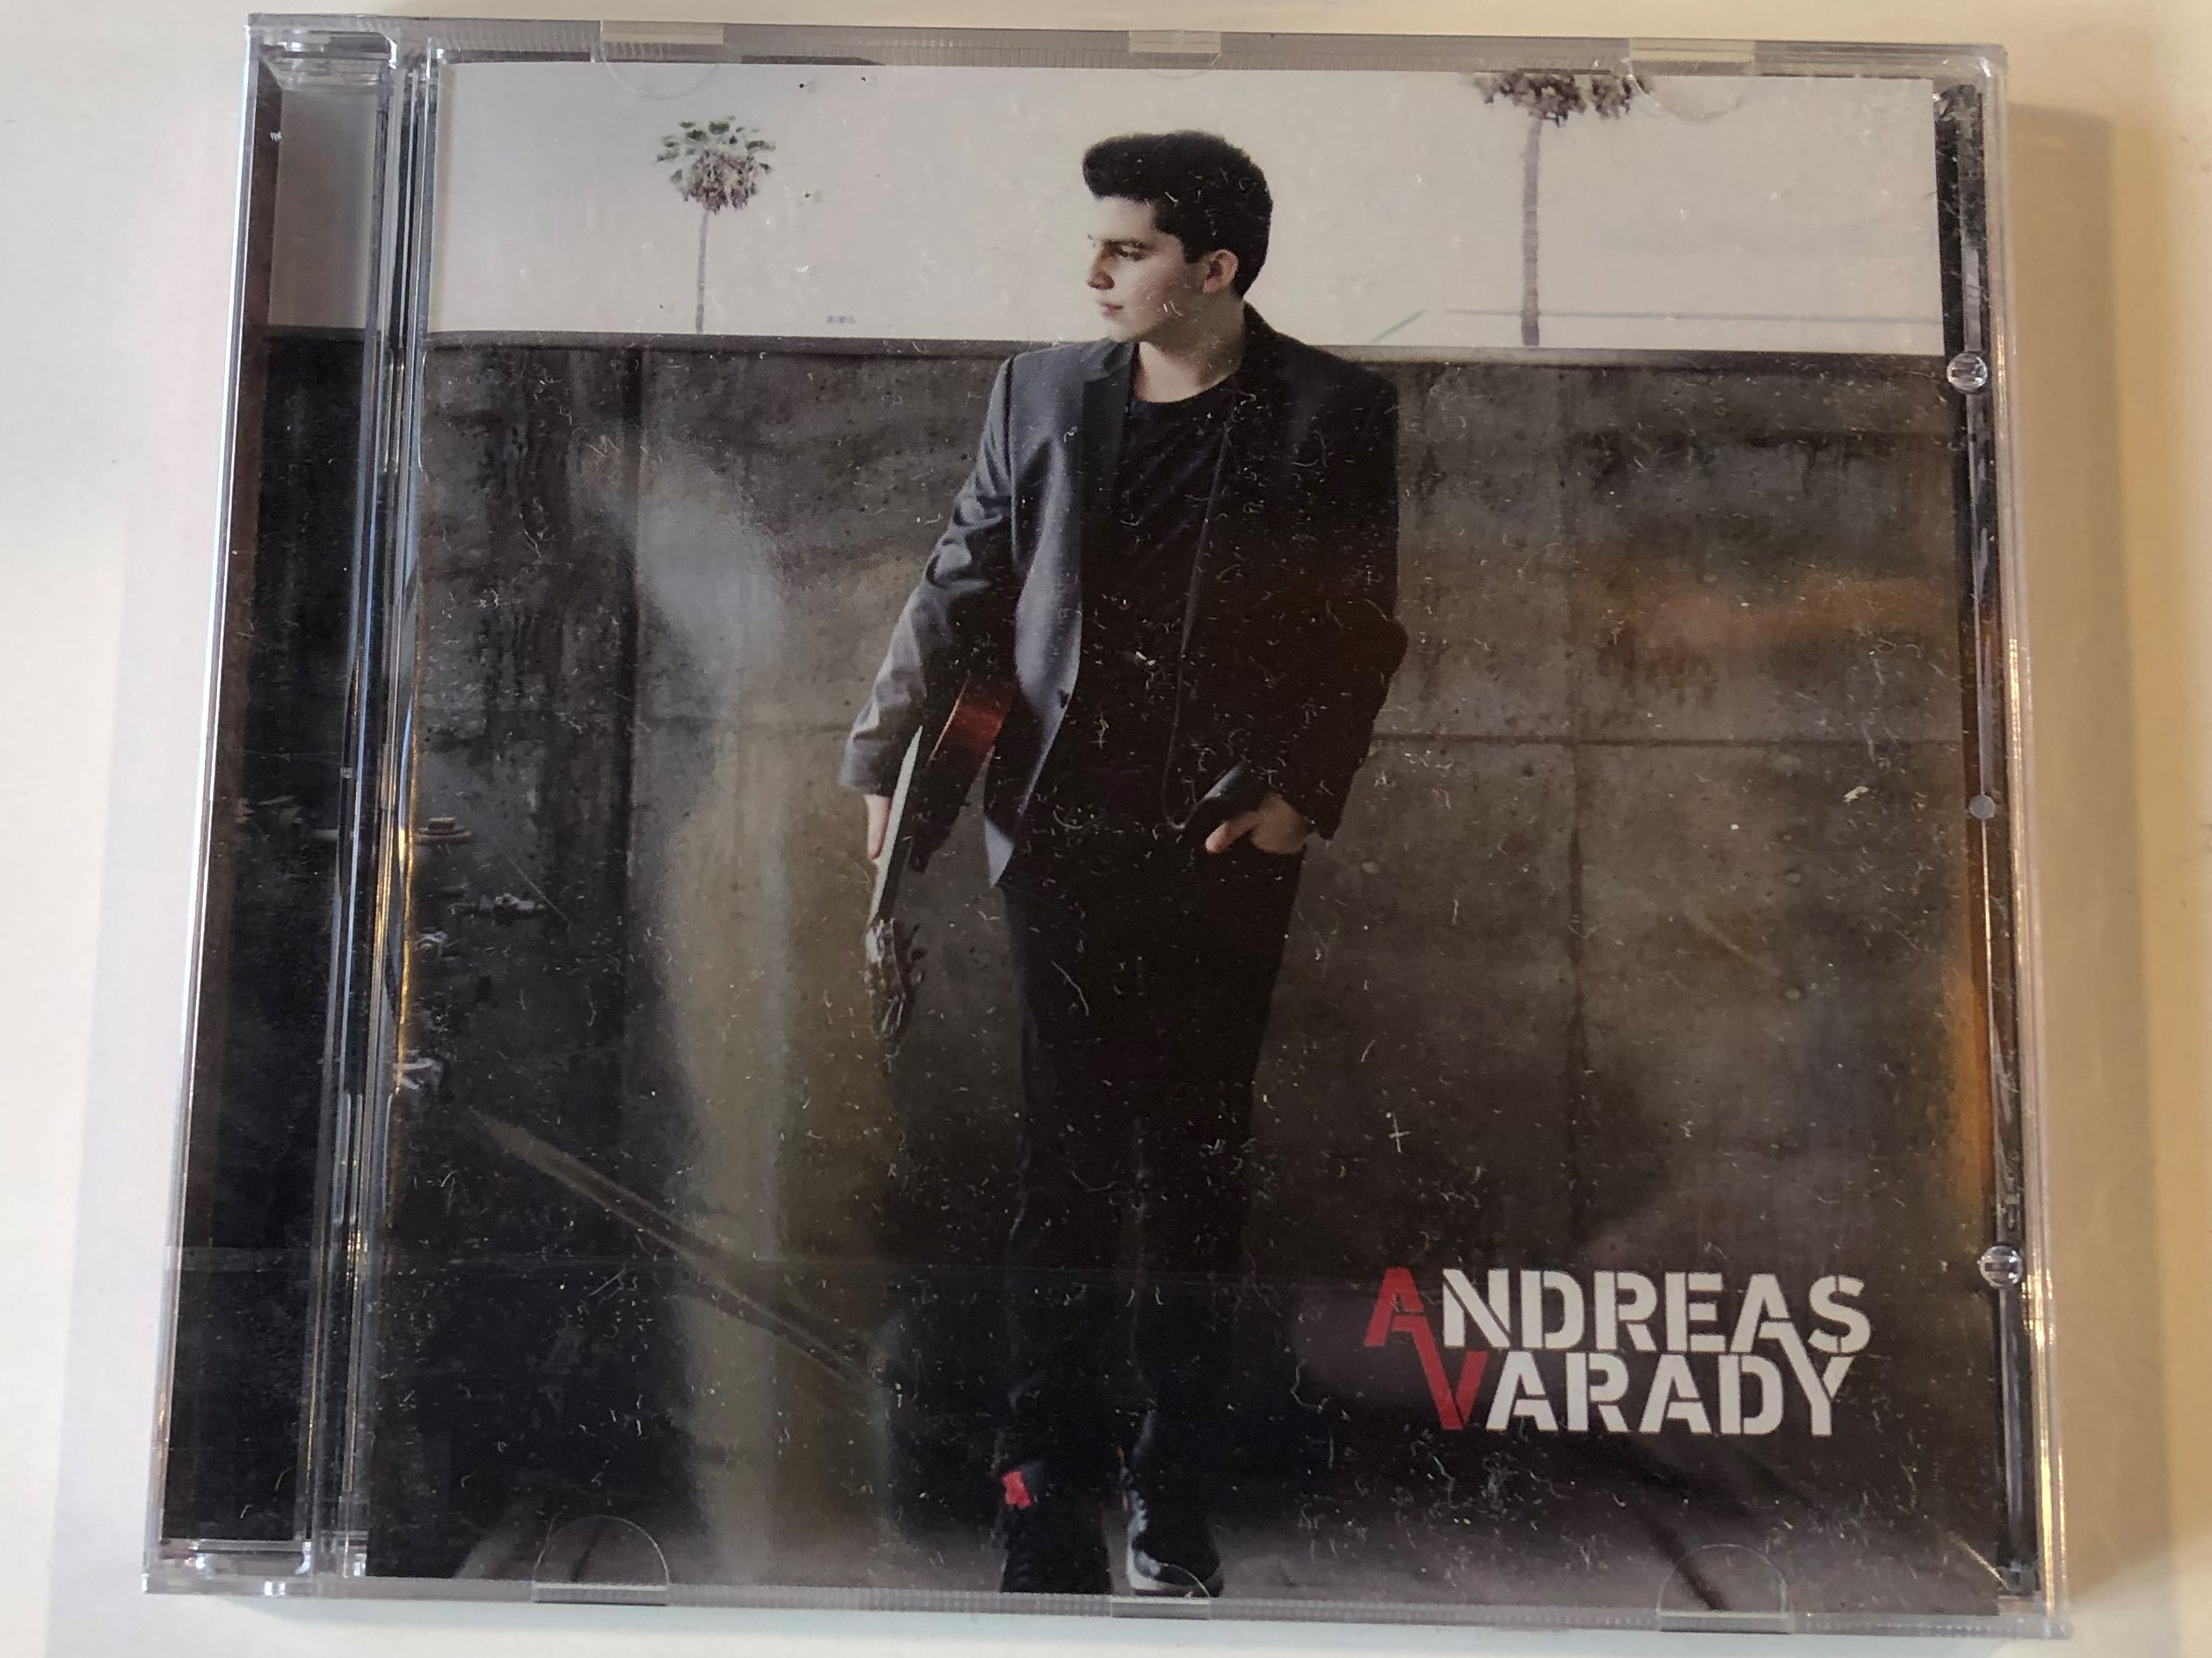 andreas-varady-the-verve-music-group-audio-cd-2014-0602537858682-1-.jpg